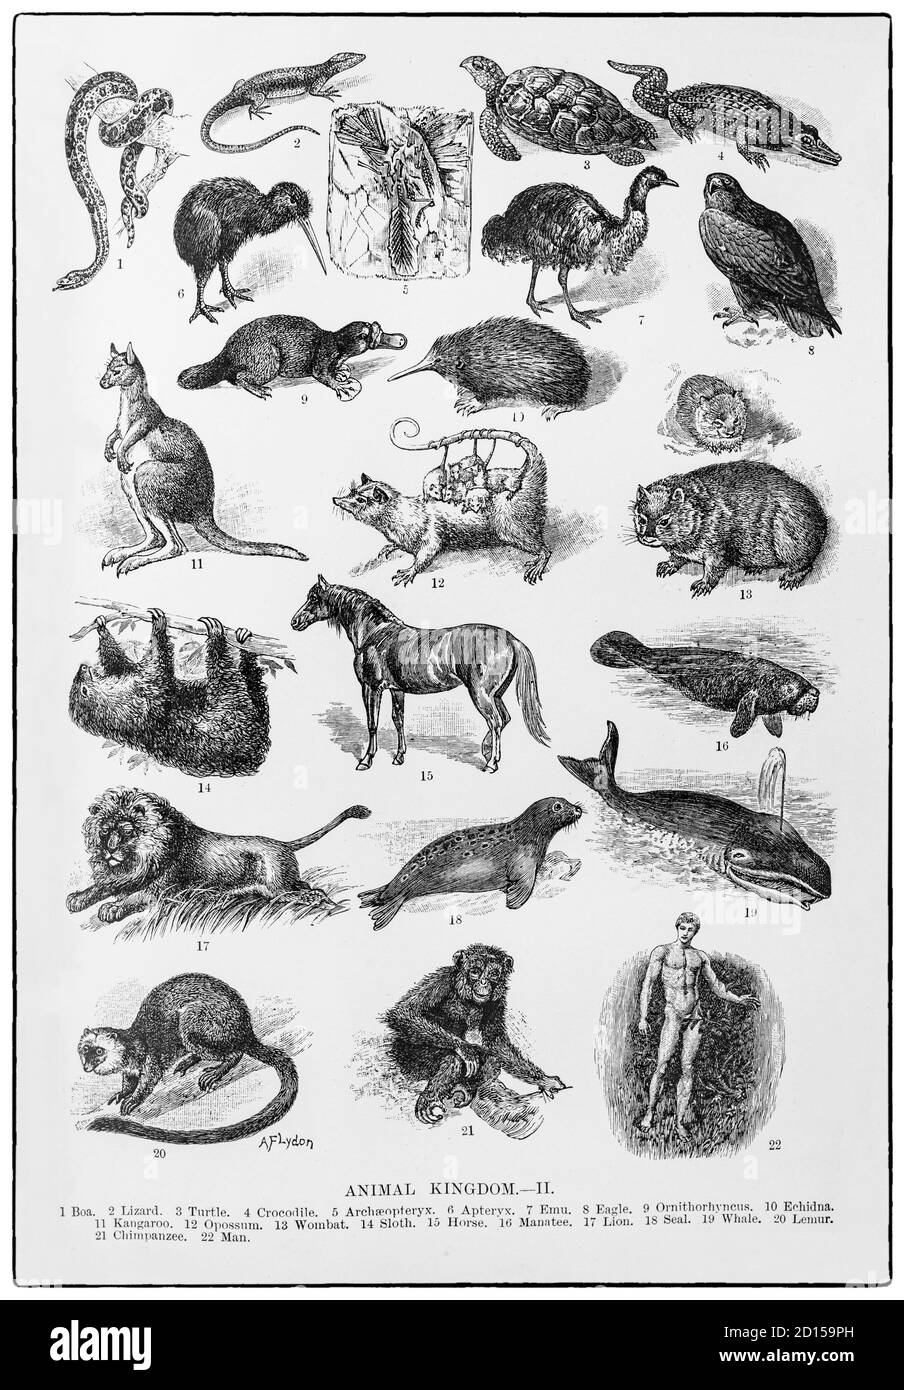 Collage de la partie supérieure du royaume animal de la fin du XIXe siècle, qui comprend une gamme de reptiles, d'oiseaux, de mammifères et d'humains. Banque D'Images